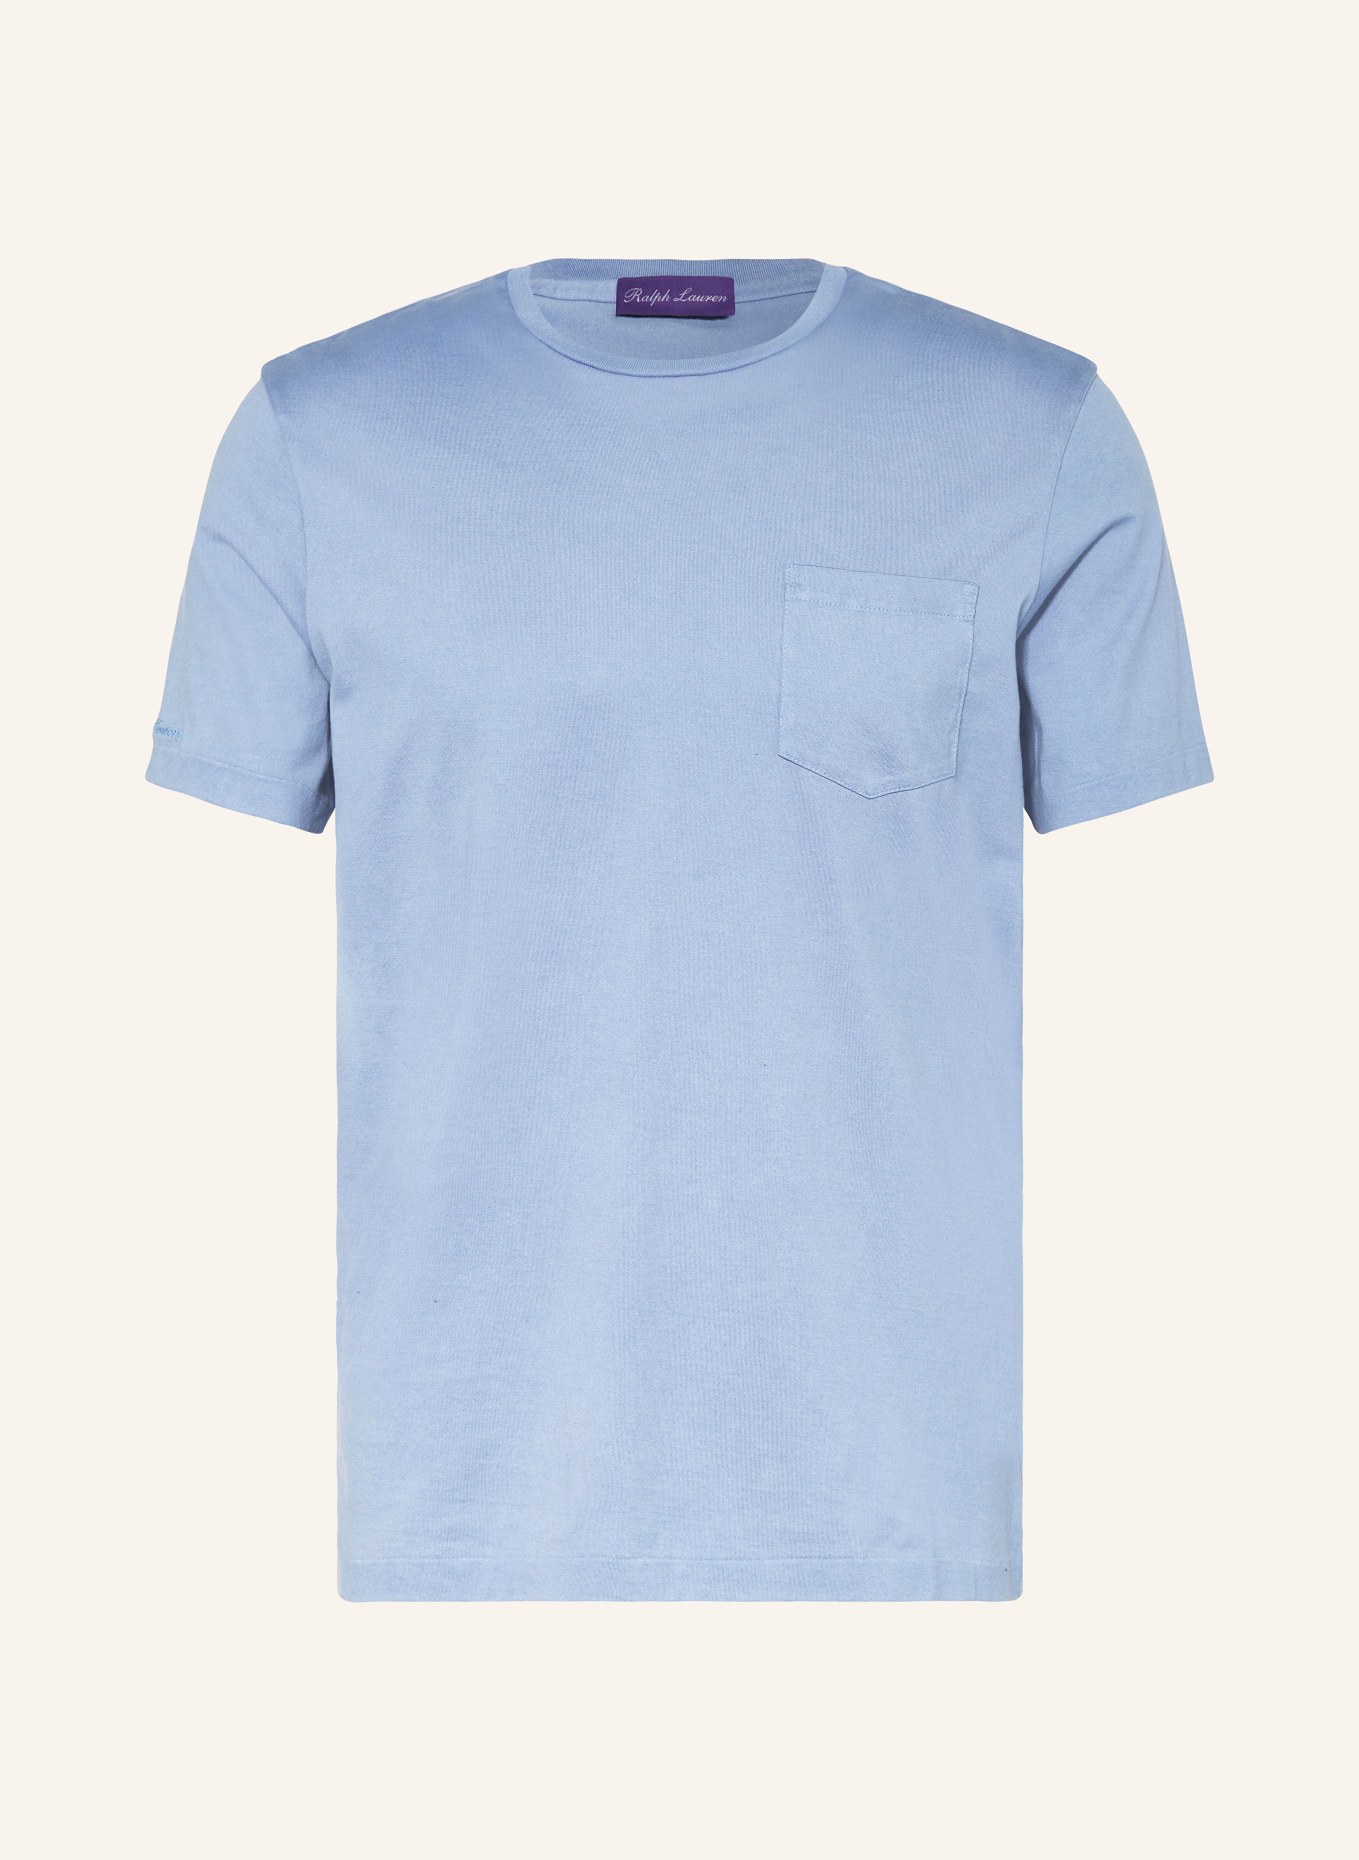 RALPH LAUREN PURPLE LABEL T-shirt, Color: LIGHT BLUE (Image 1)